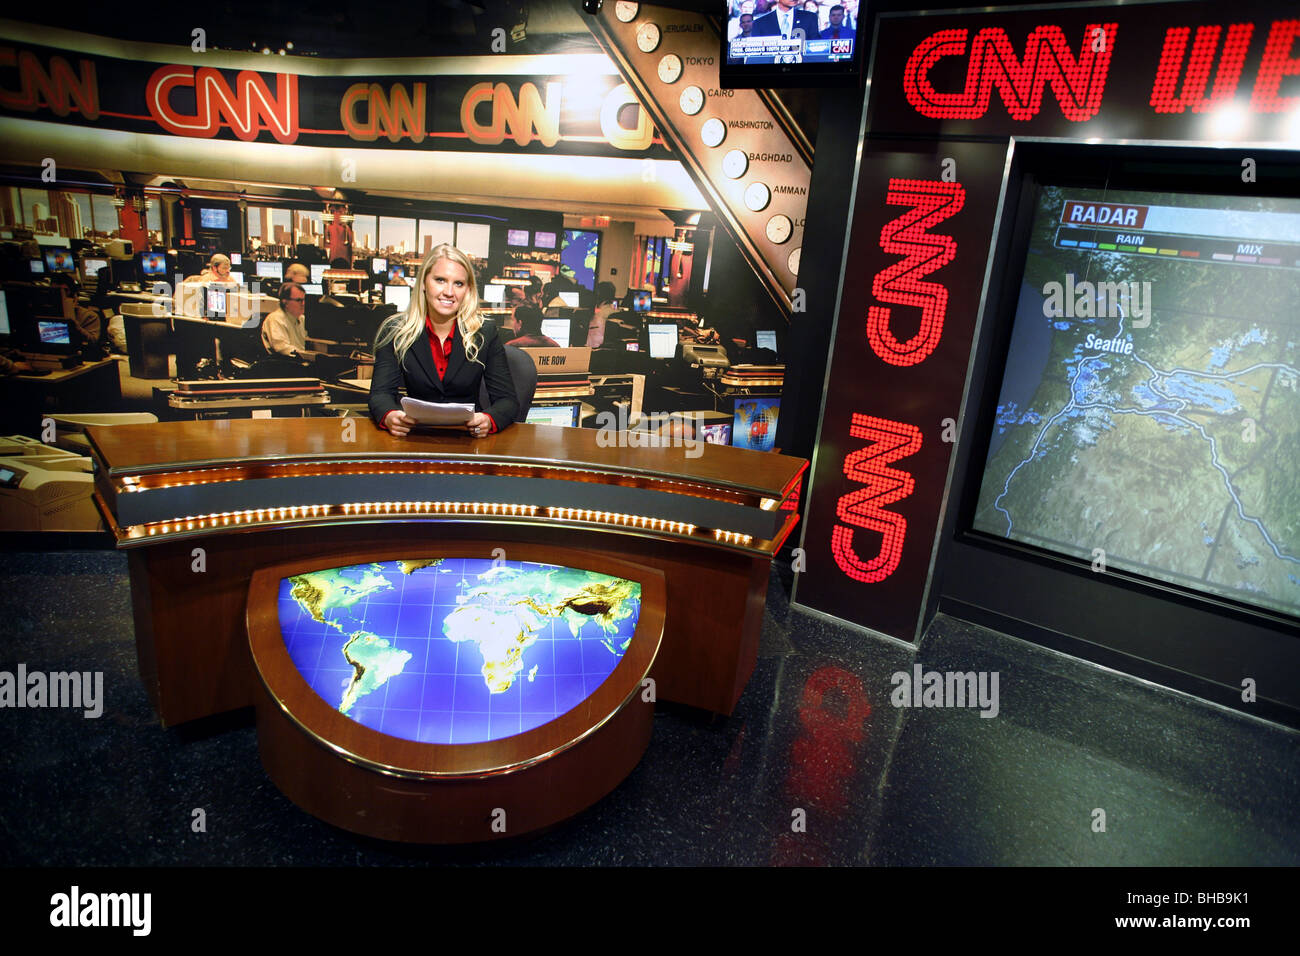 À l'intérieur de Studio Tour CNN, siège de CNN, à Atlanta, Georgia, USA Banque D'Images